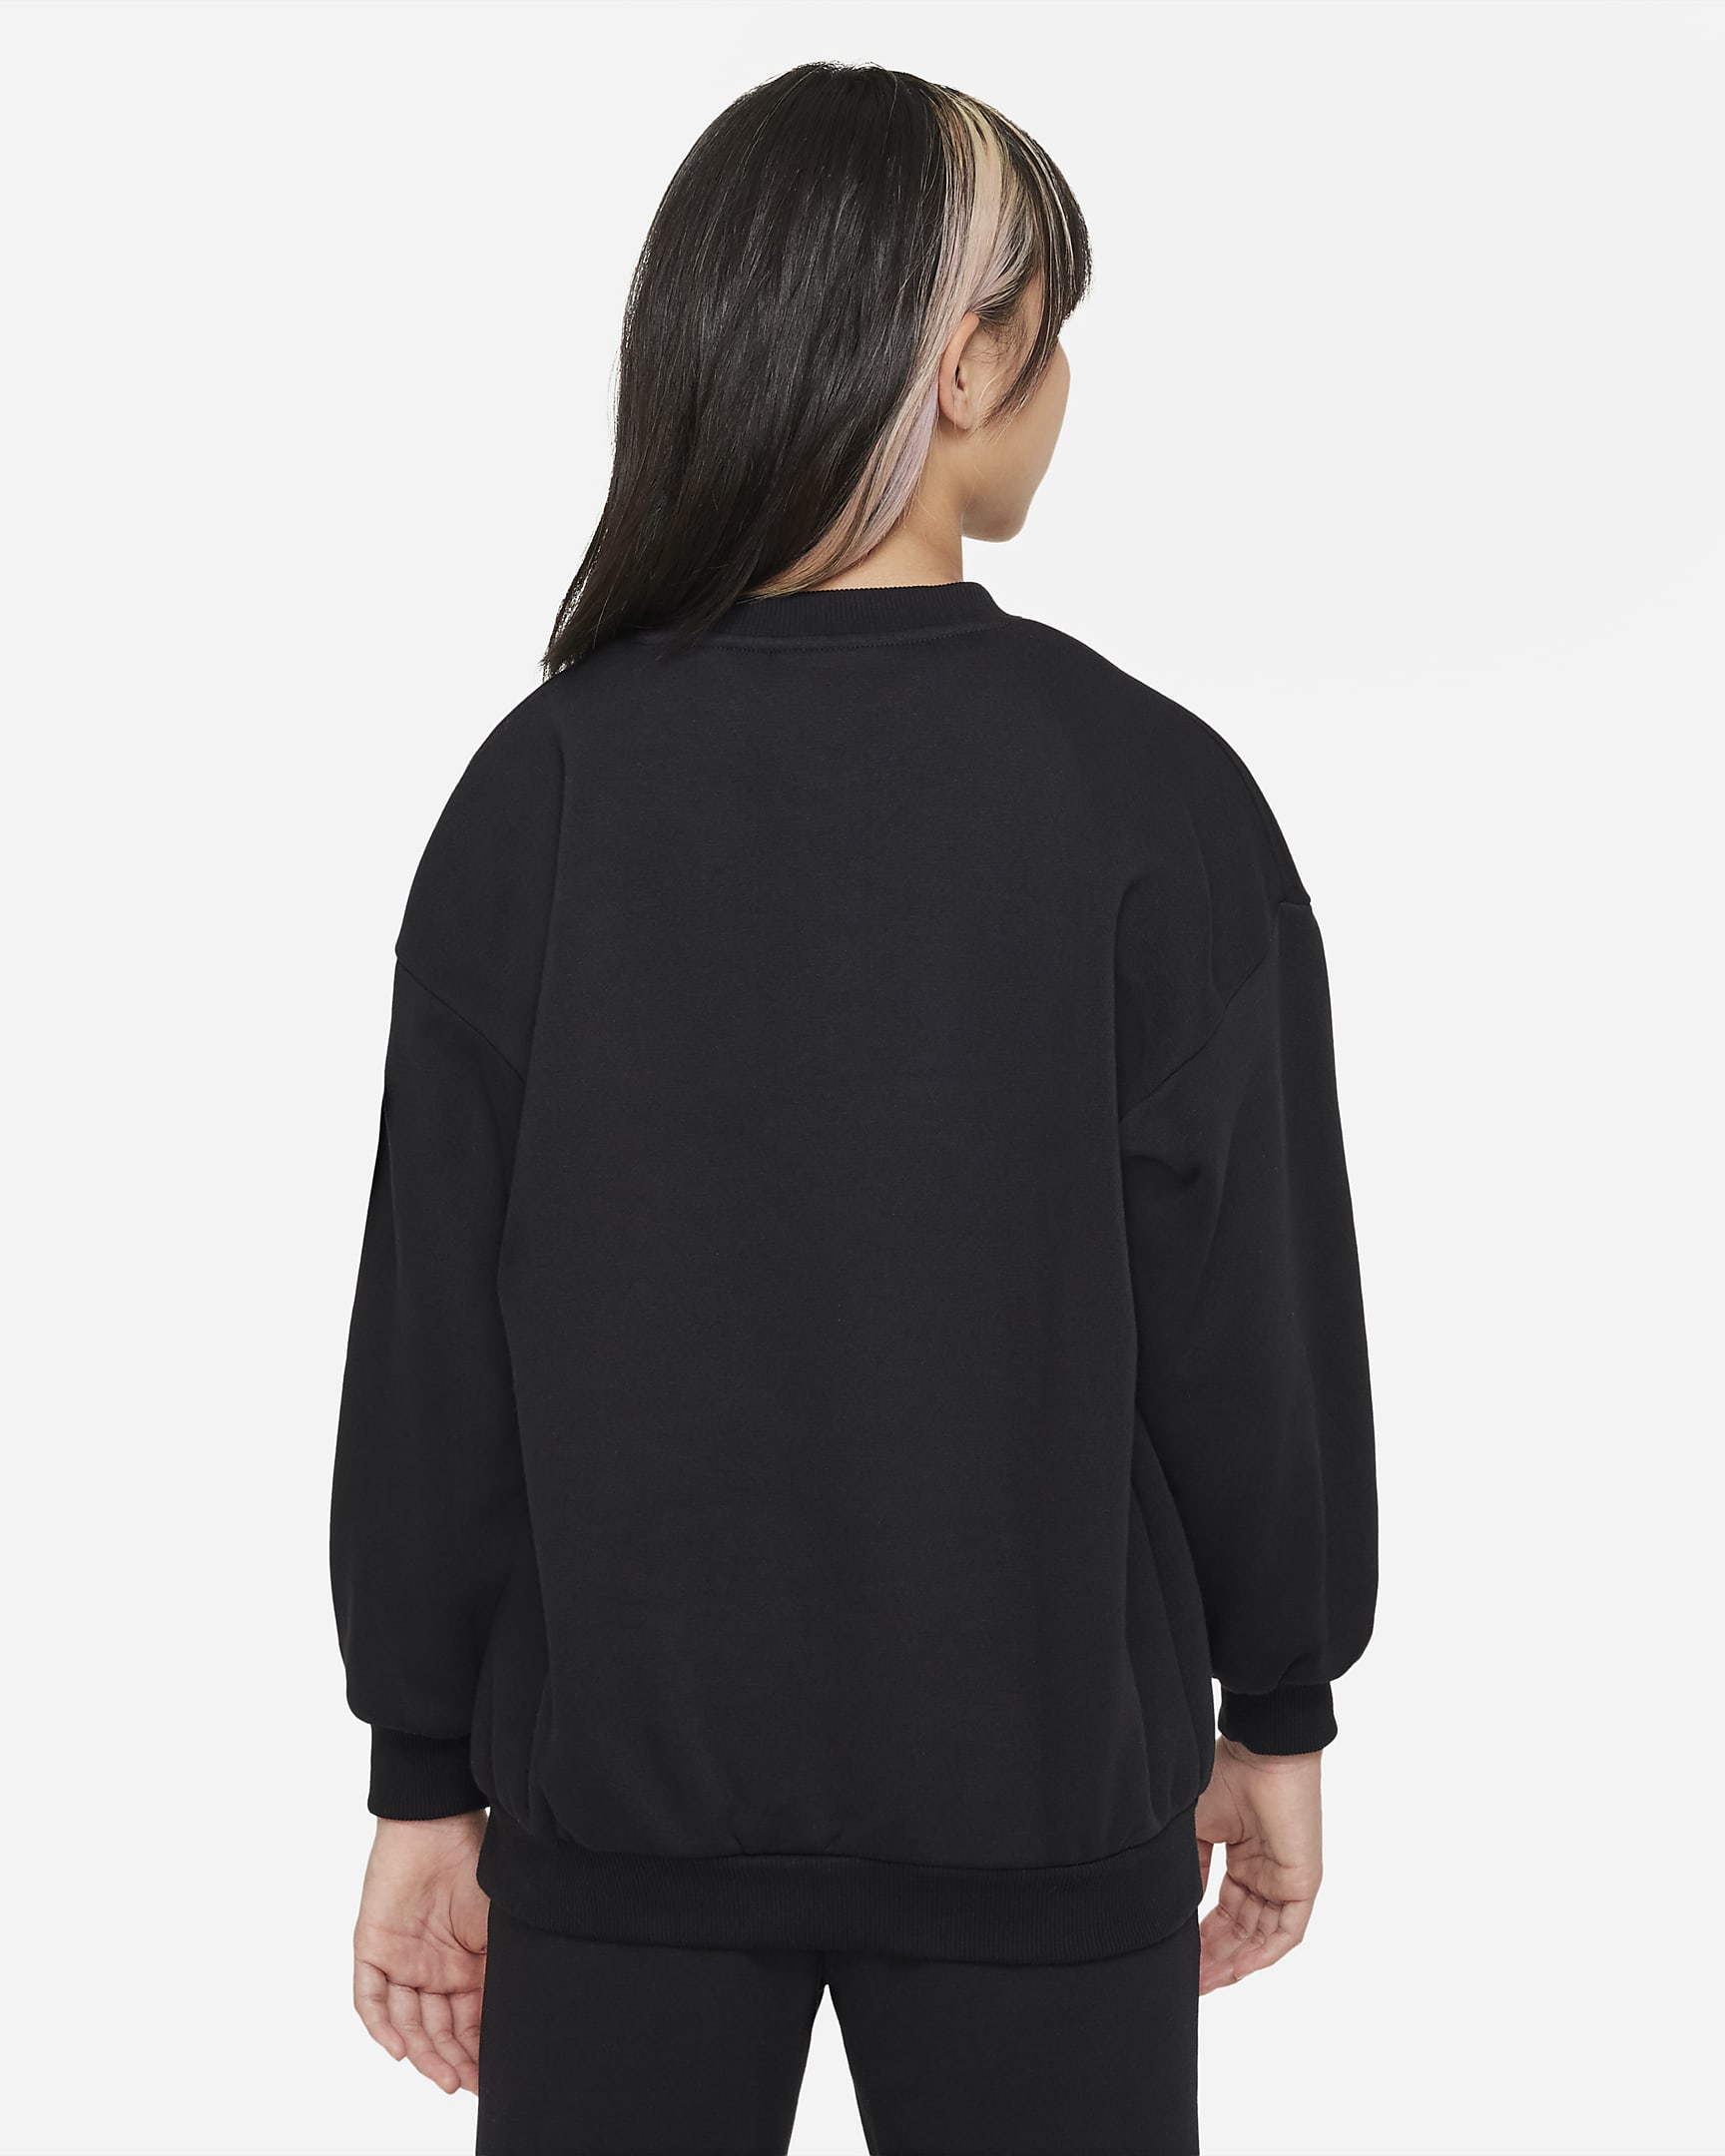 Nike Sportswear Icon Fleece Older Kids' (Girls') Sweatshirt - Black/Metallic Gold